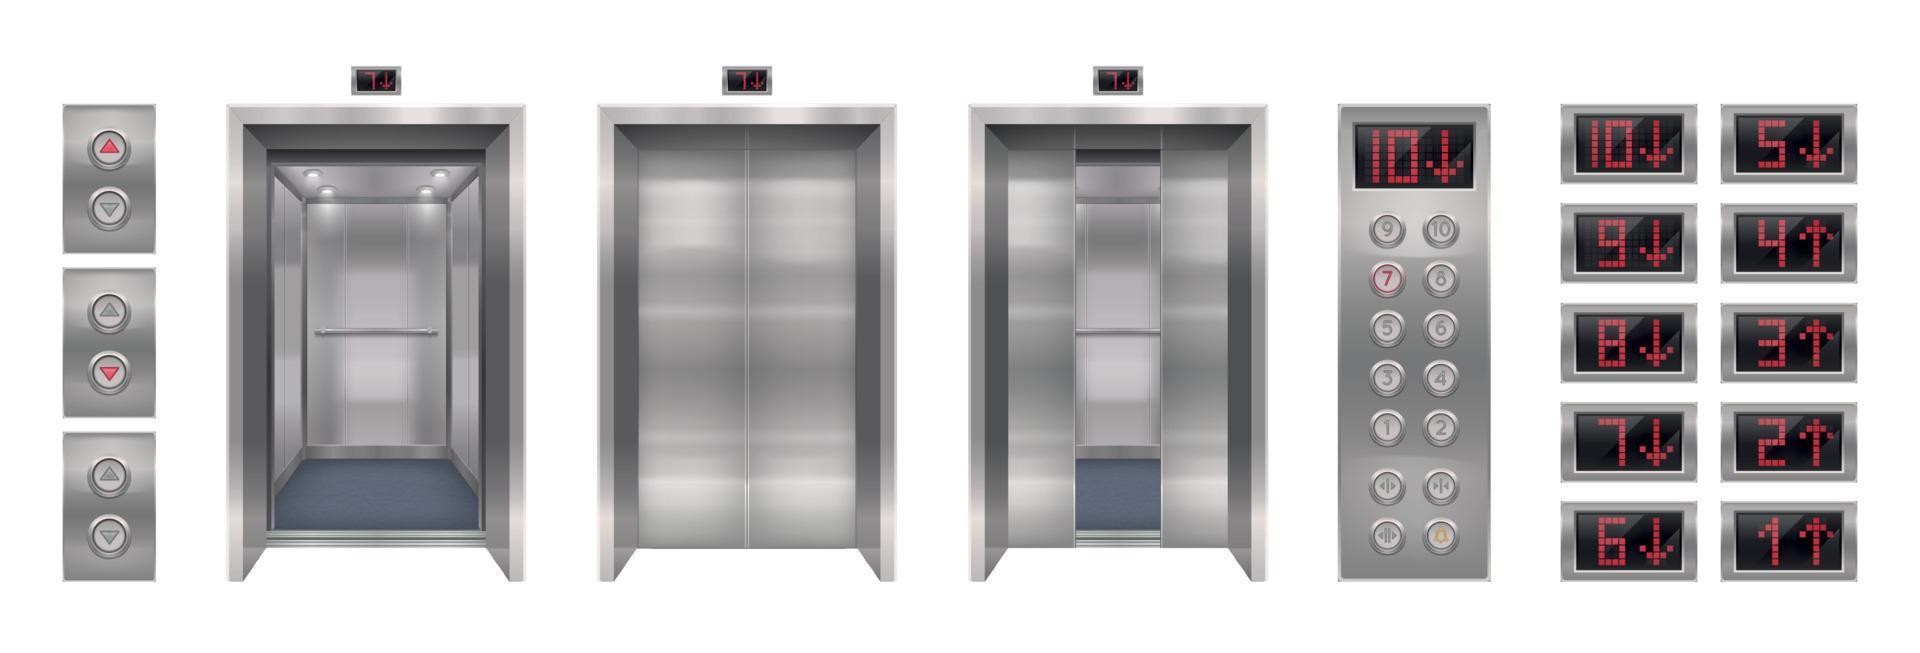 Realistic Elevator Door Collection vector